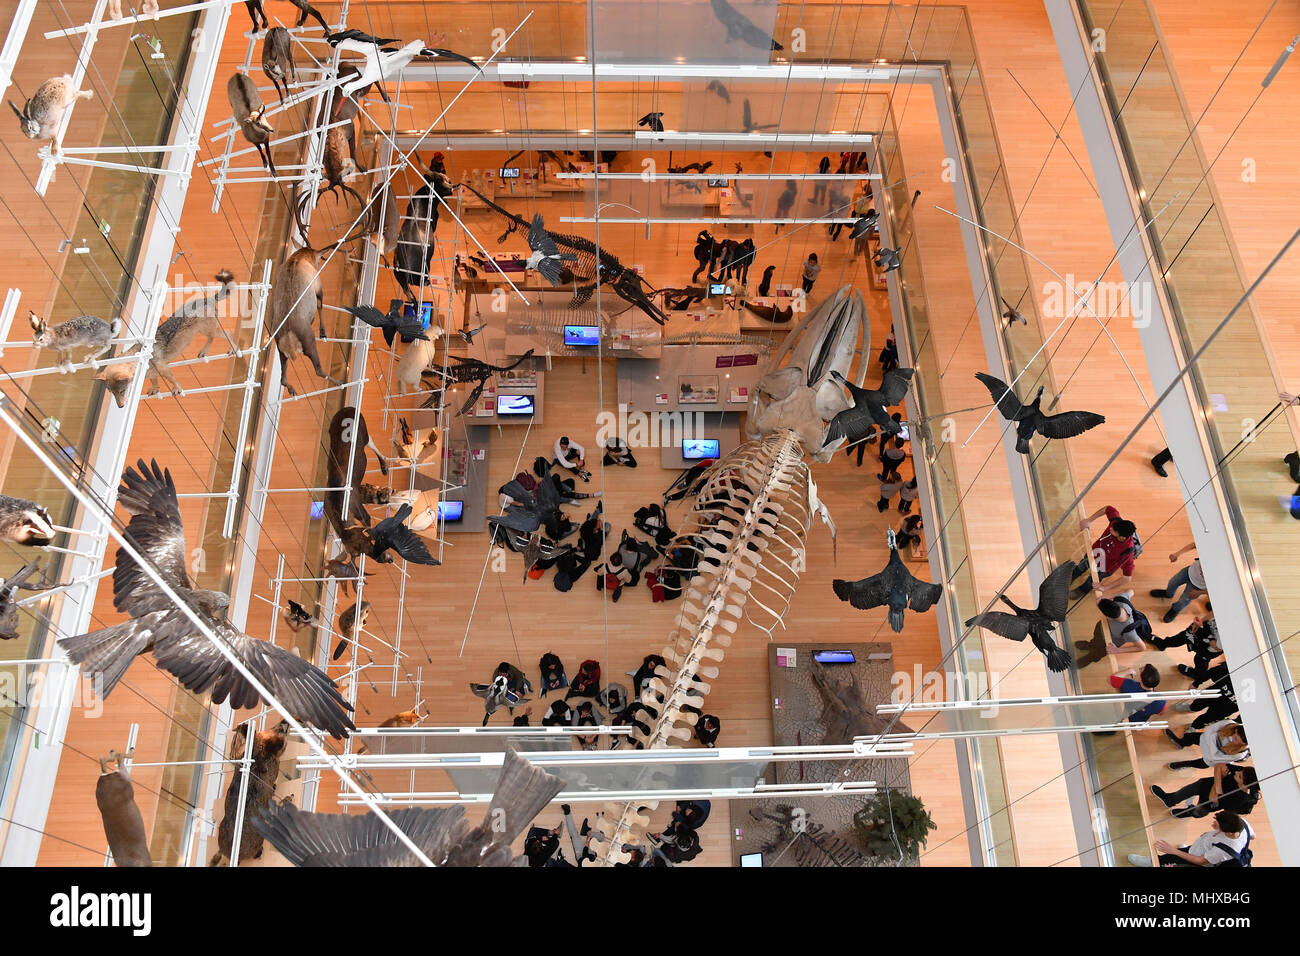 TRENTO, ITALIEN - MÄRZ 27 2018 - Muse ist die neue interaktive Museum von Italien, von bekannten Architekten Renzo Piano entworfen, voll von Studenten in Intera Stockfoto